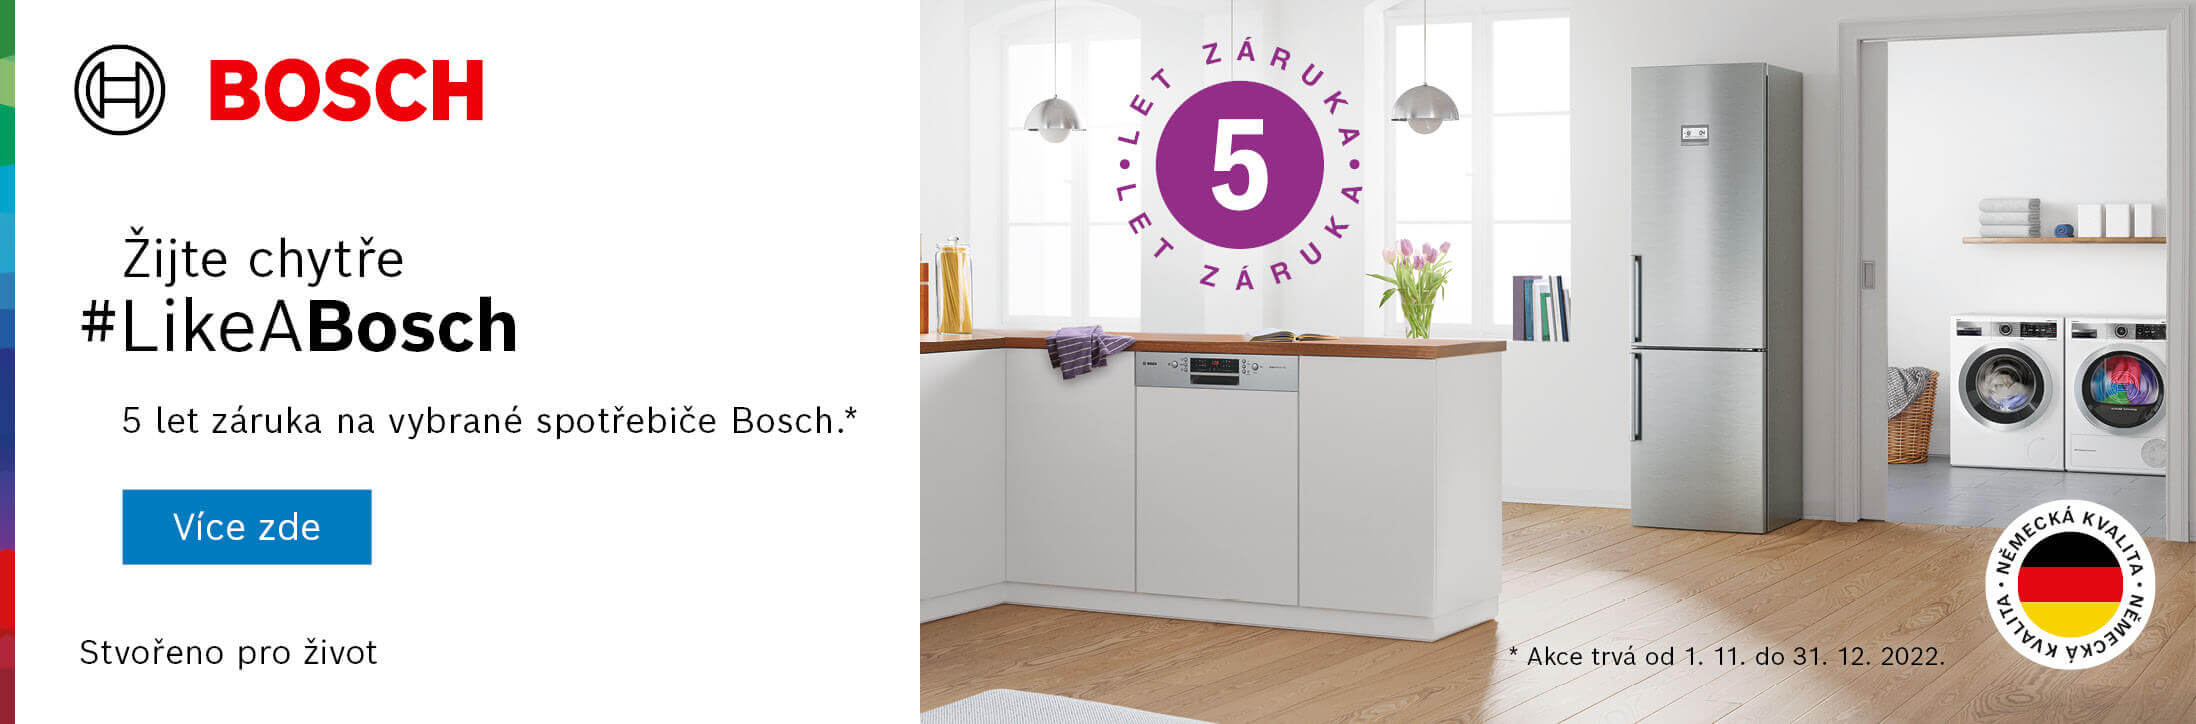 Bosch - 5 let záruka na vybrané spotřebiče Bosch